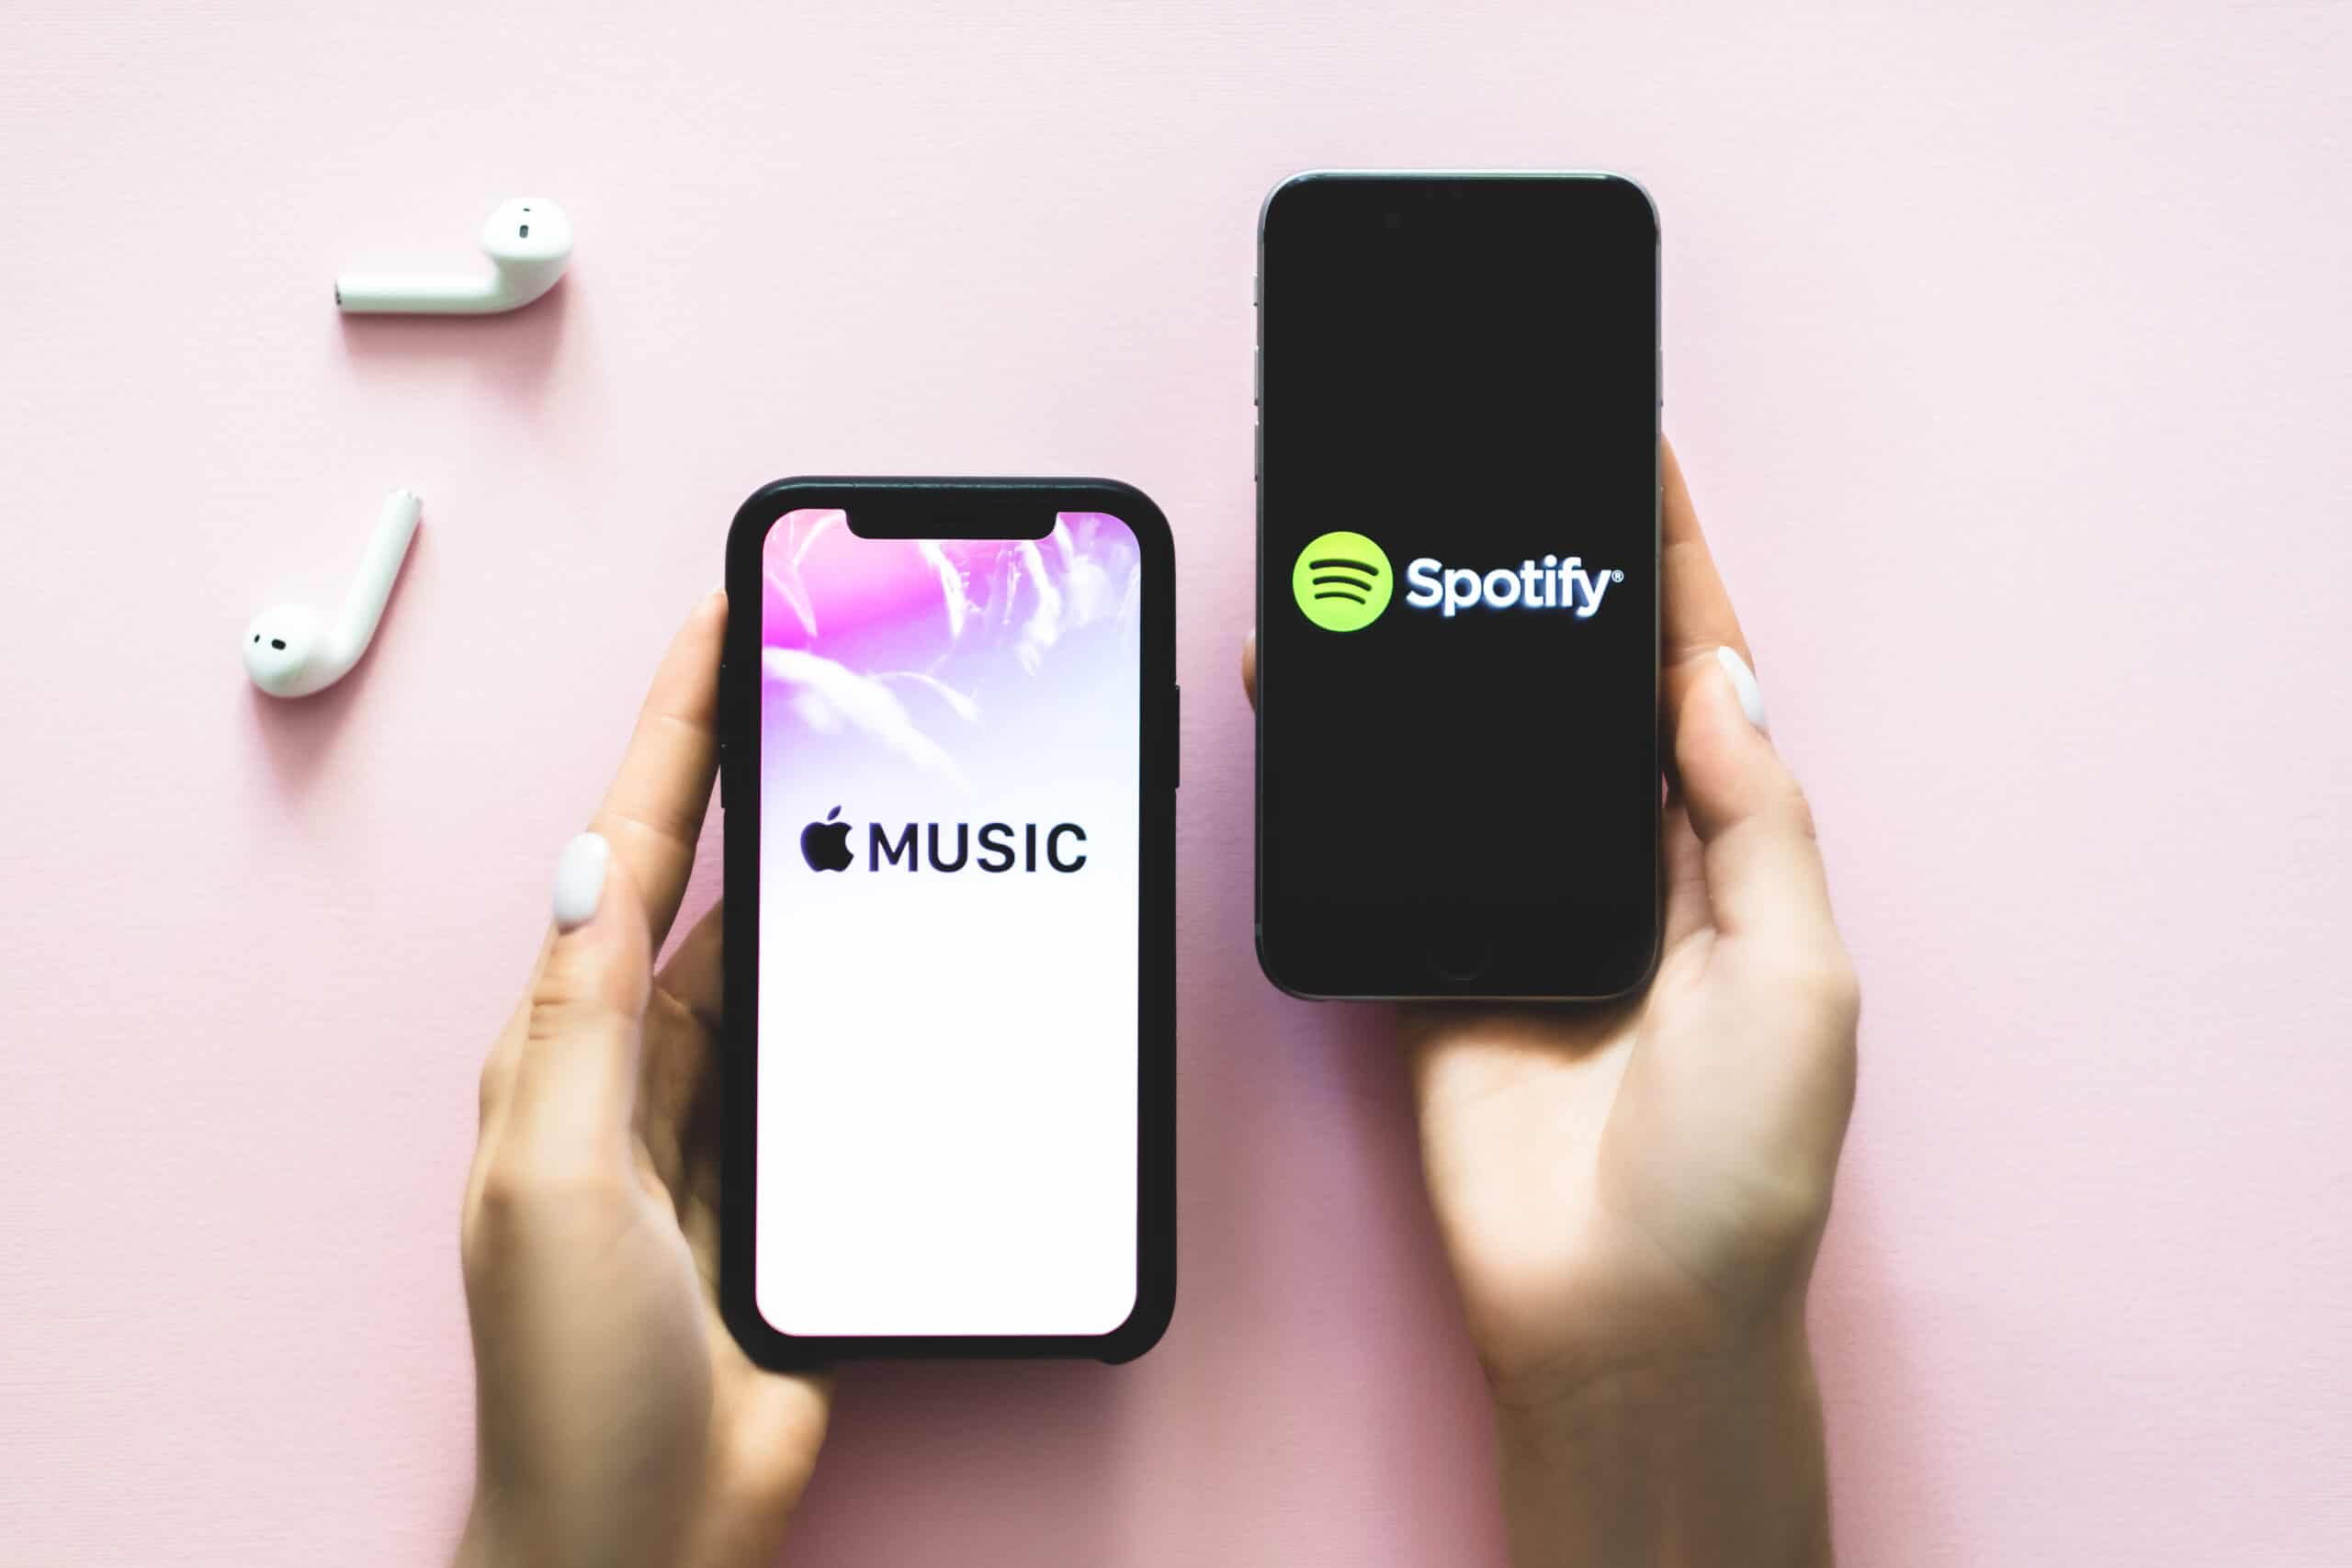 Apple Music vs Spotify: Full Comparison